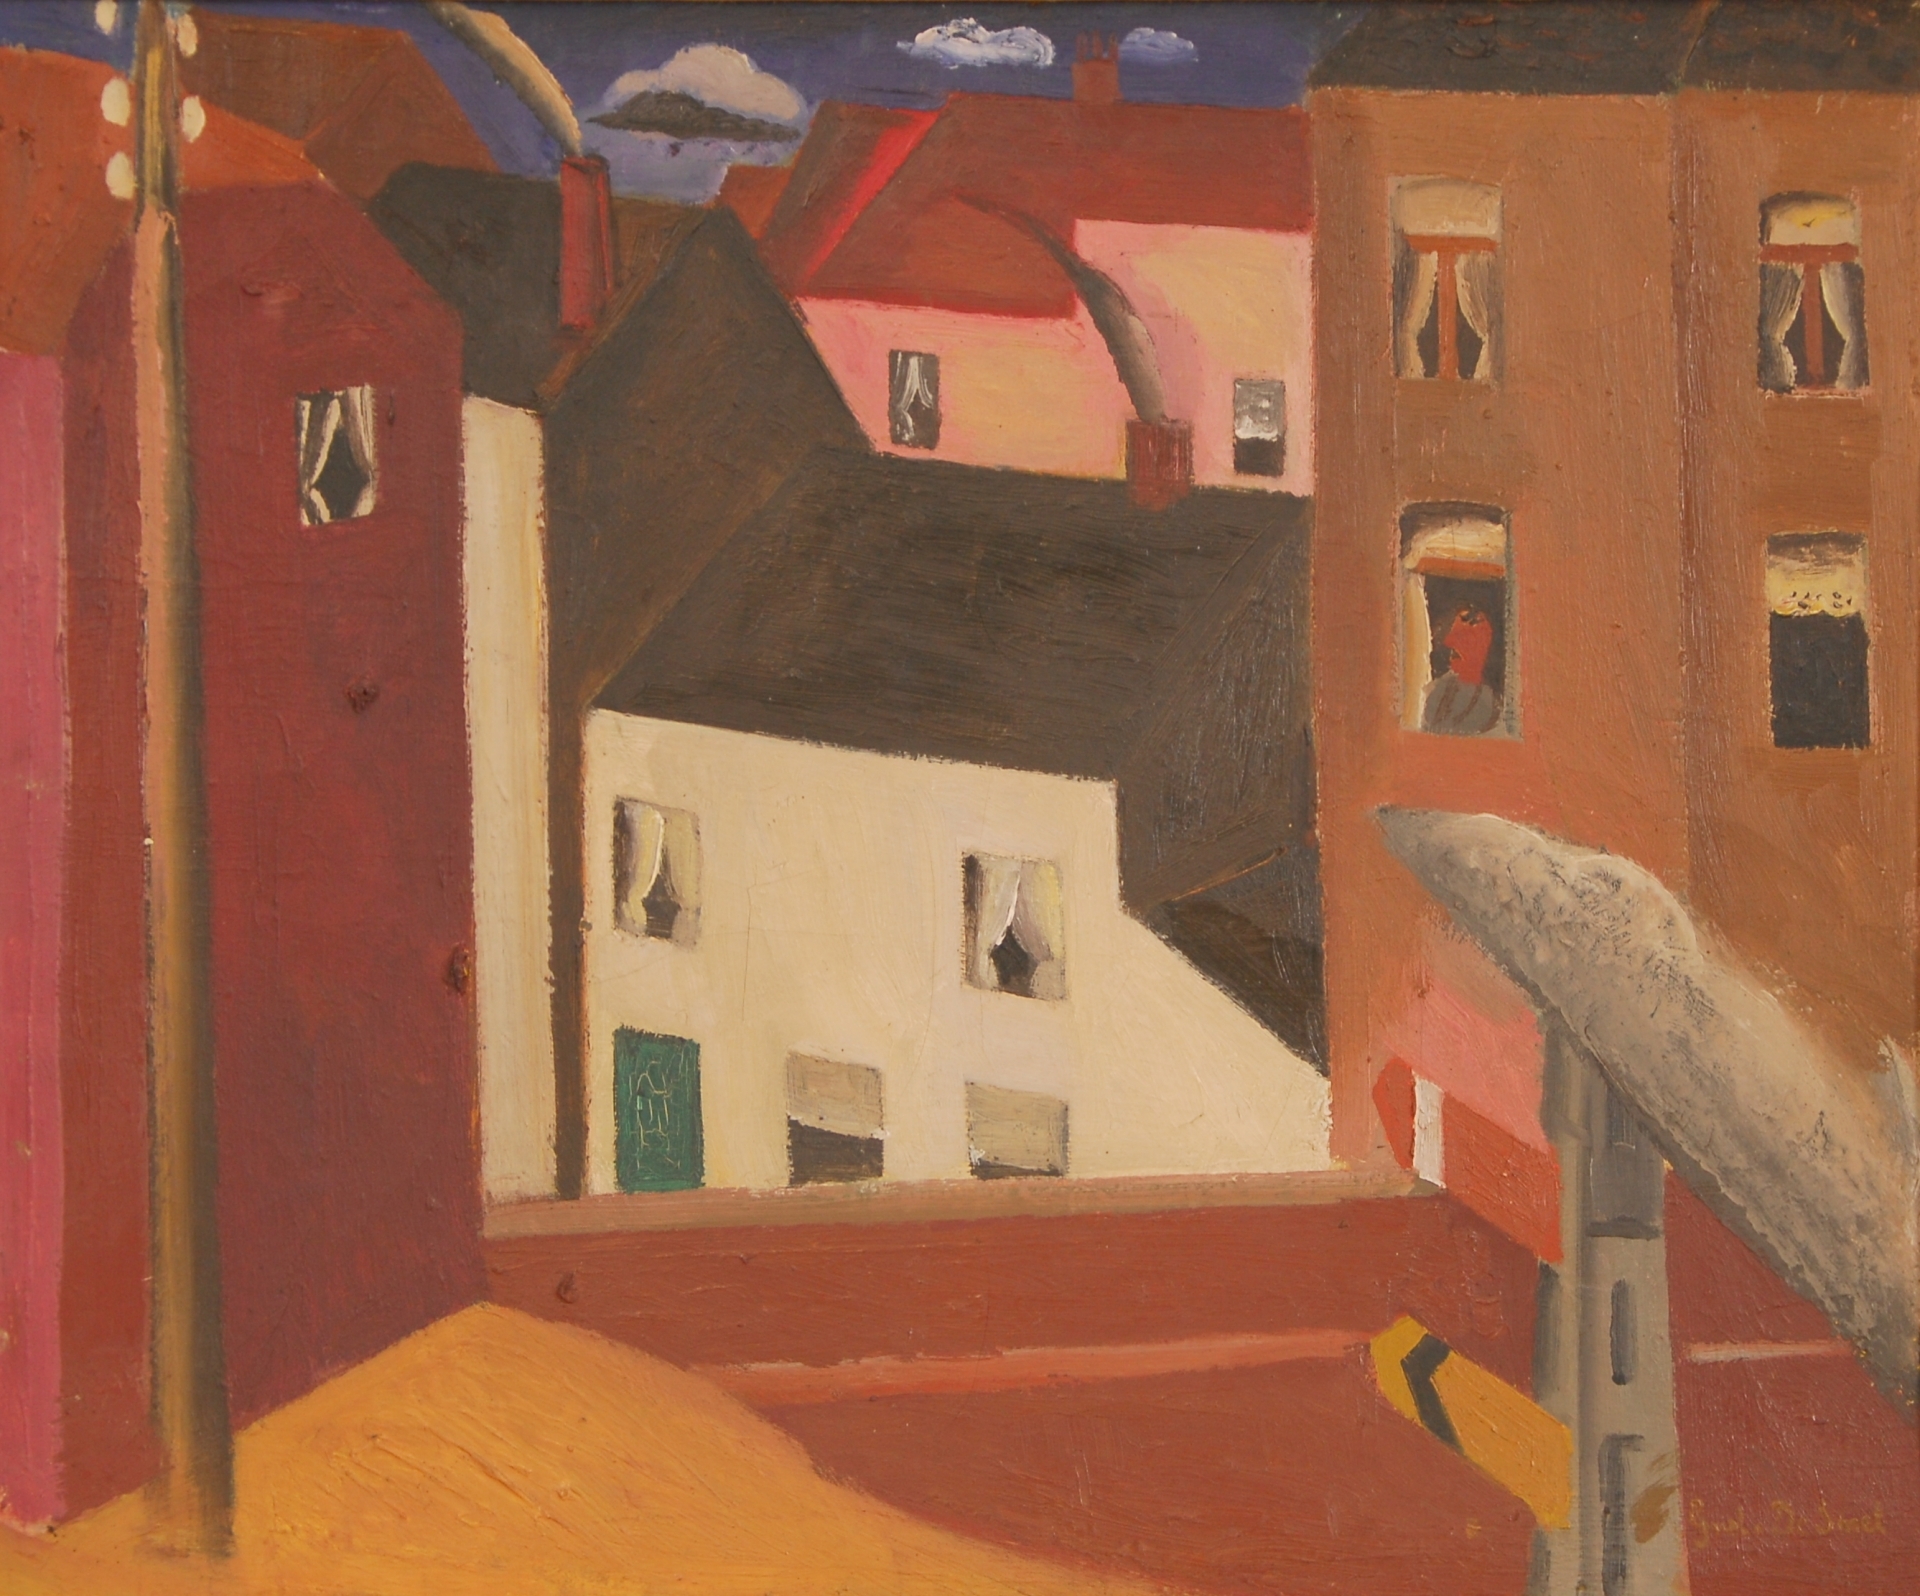 La maison blanche by Gustave de Smet, 1922